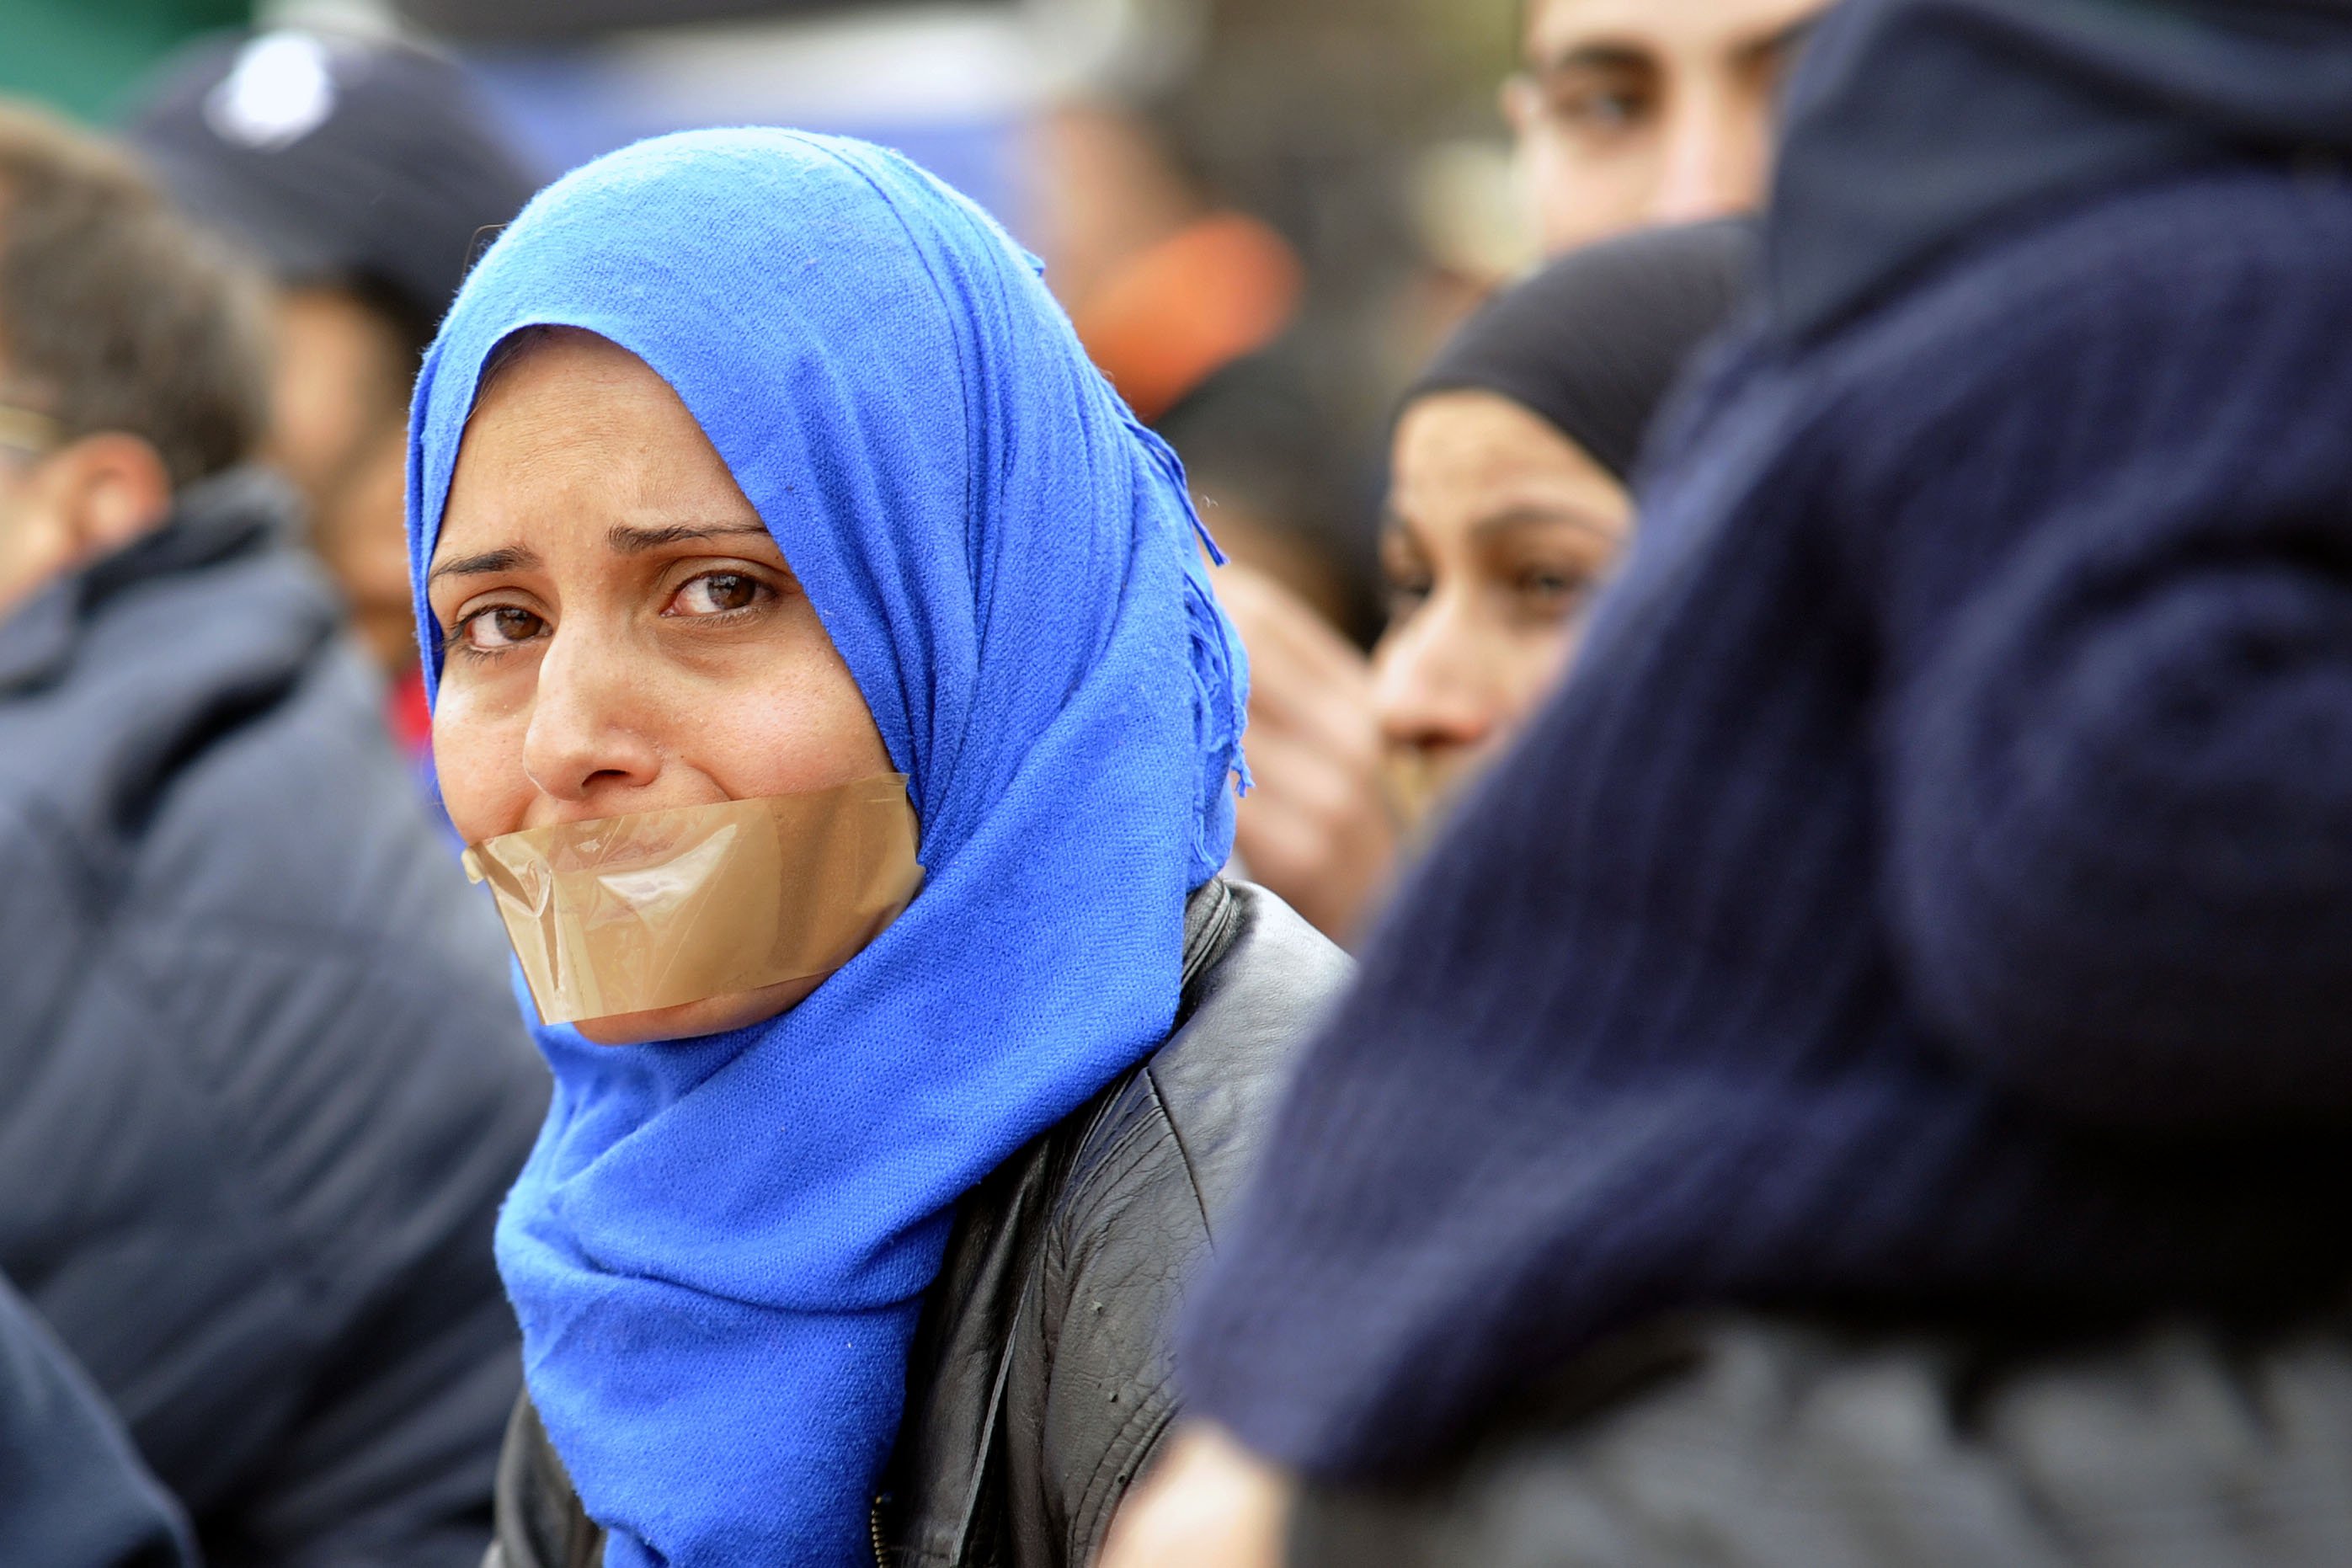 Λιποθύμησε γυναίκα από την Συρία στο Σύνταγμα - Έχουν ξεκινήσει απεργία πείνας (φωτο)